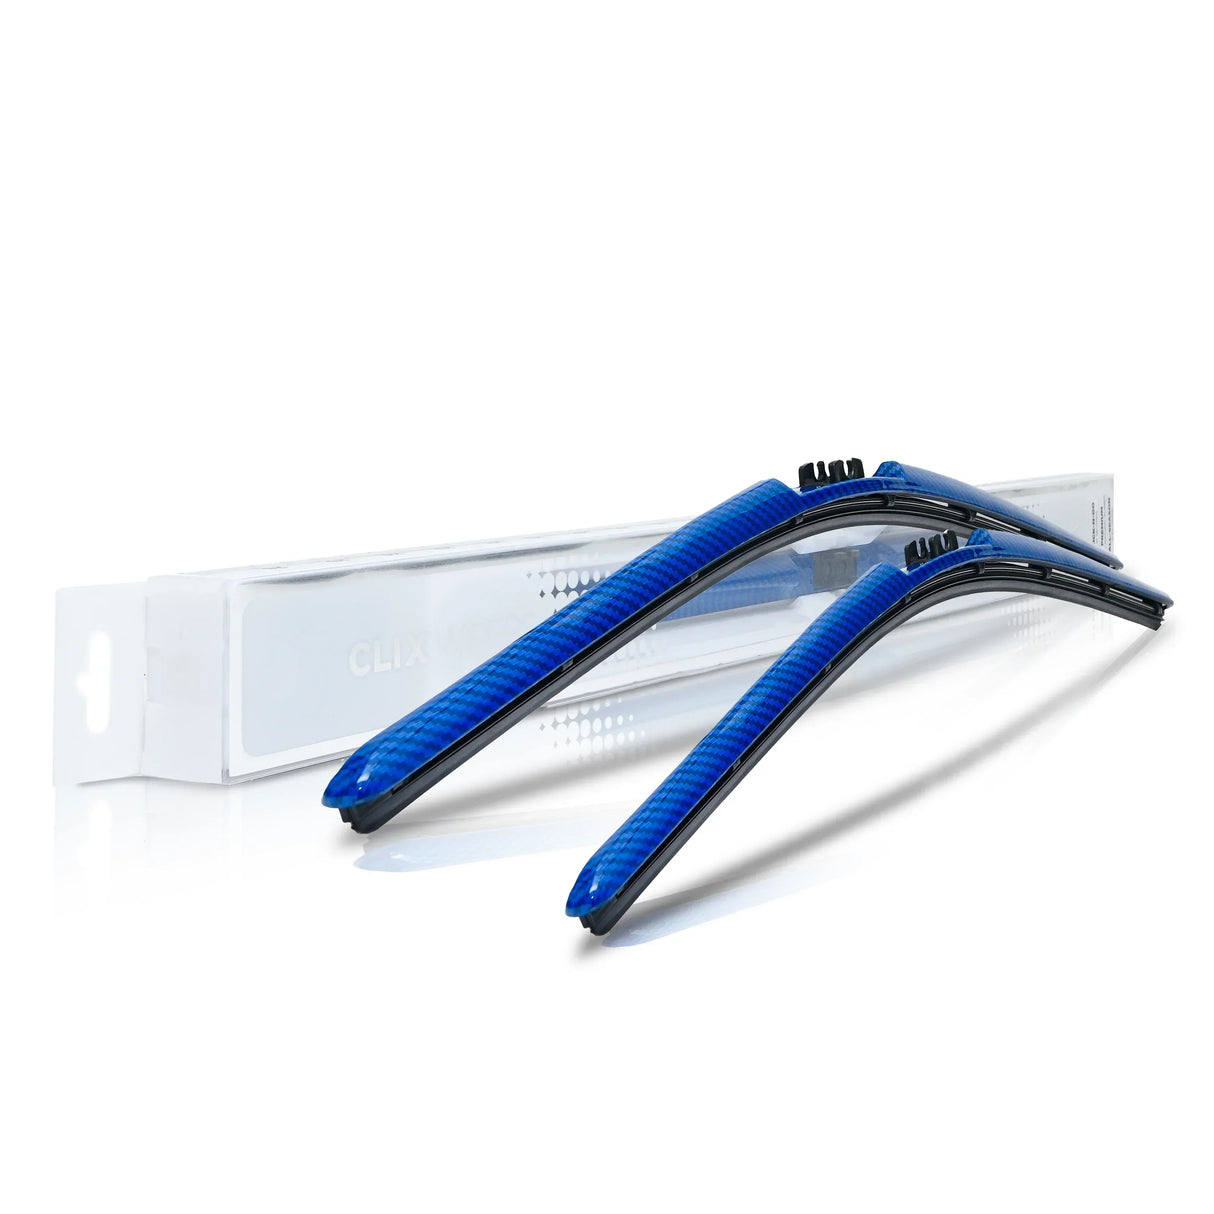 Isuzu I Series Windshield Wiper Blades - ClixAuto